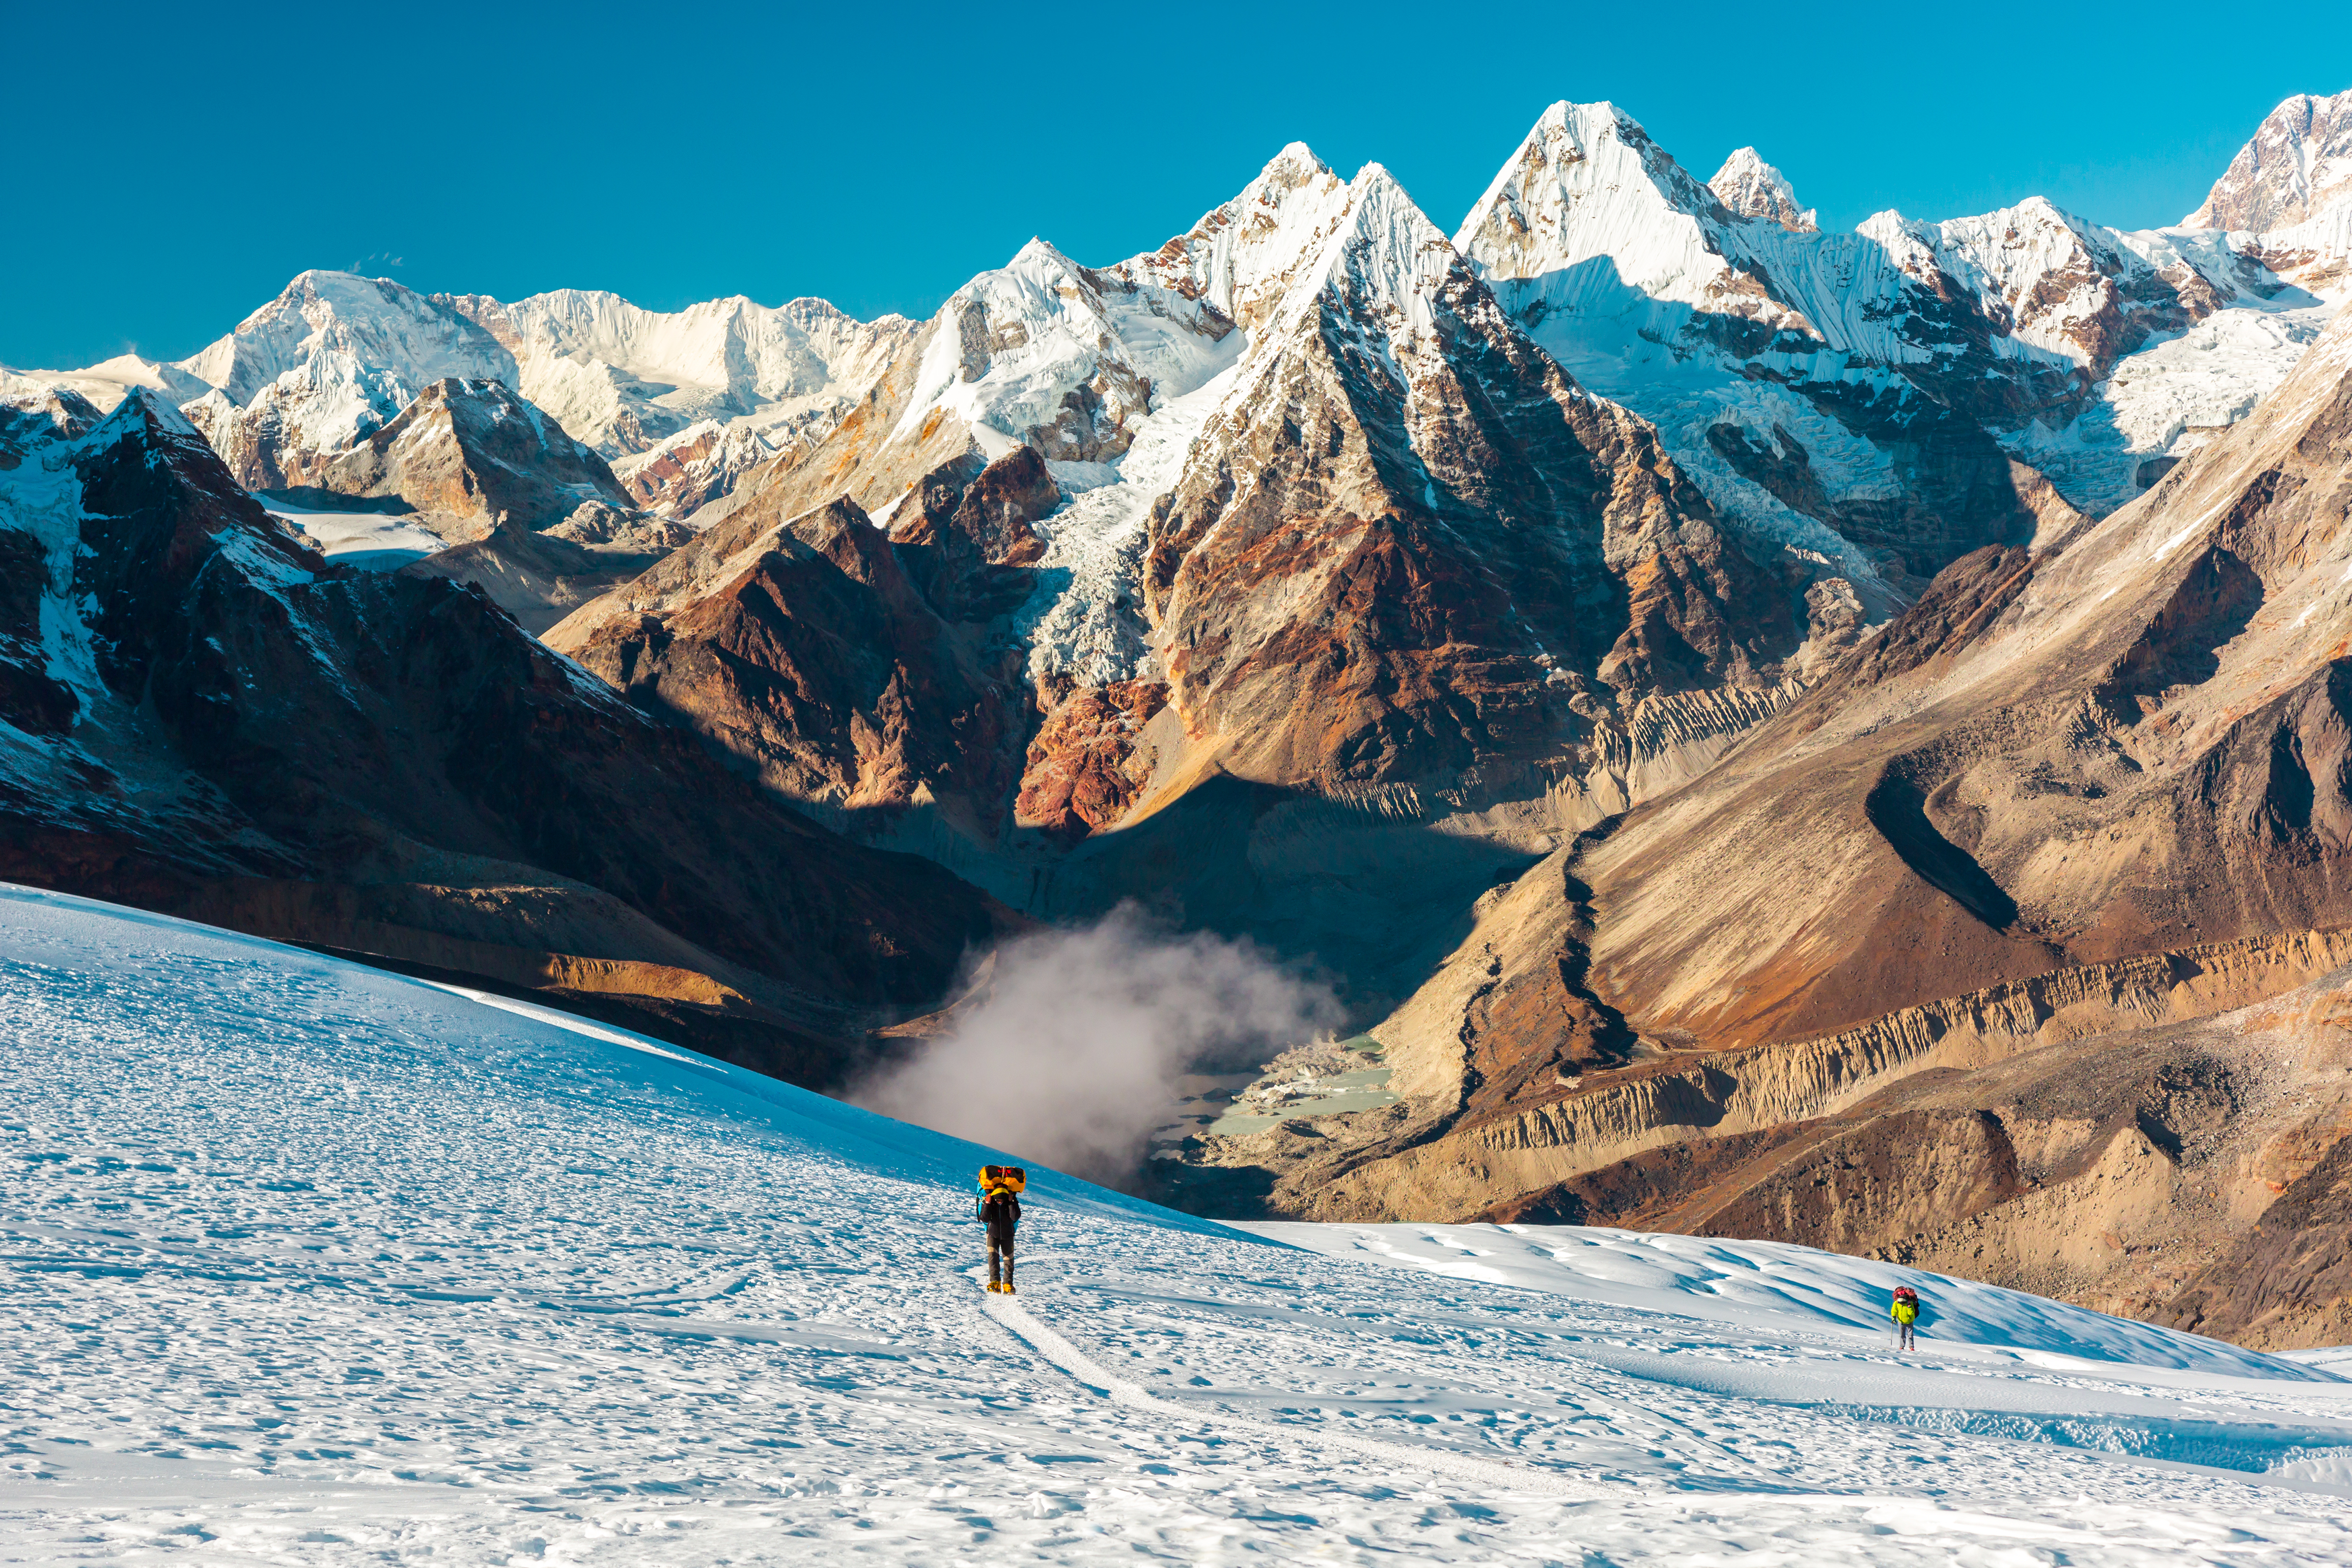 Las 9 rarezas y mitos del Monte Everest